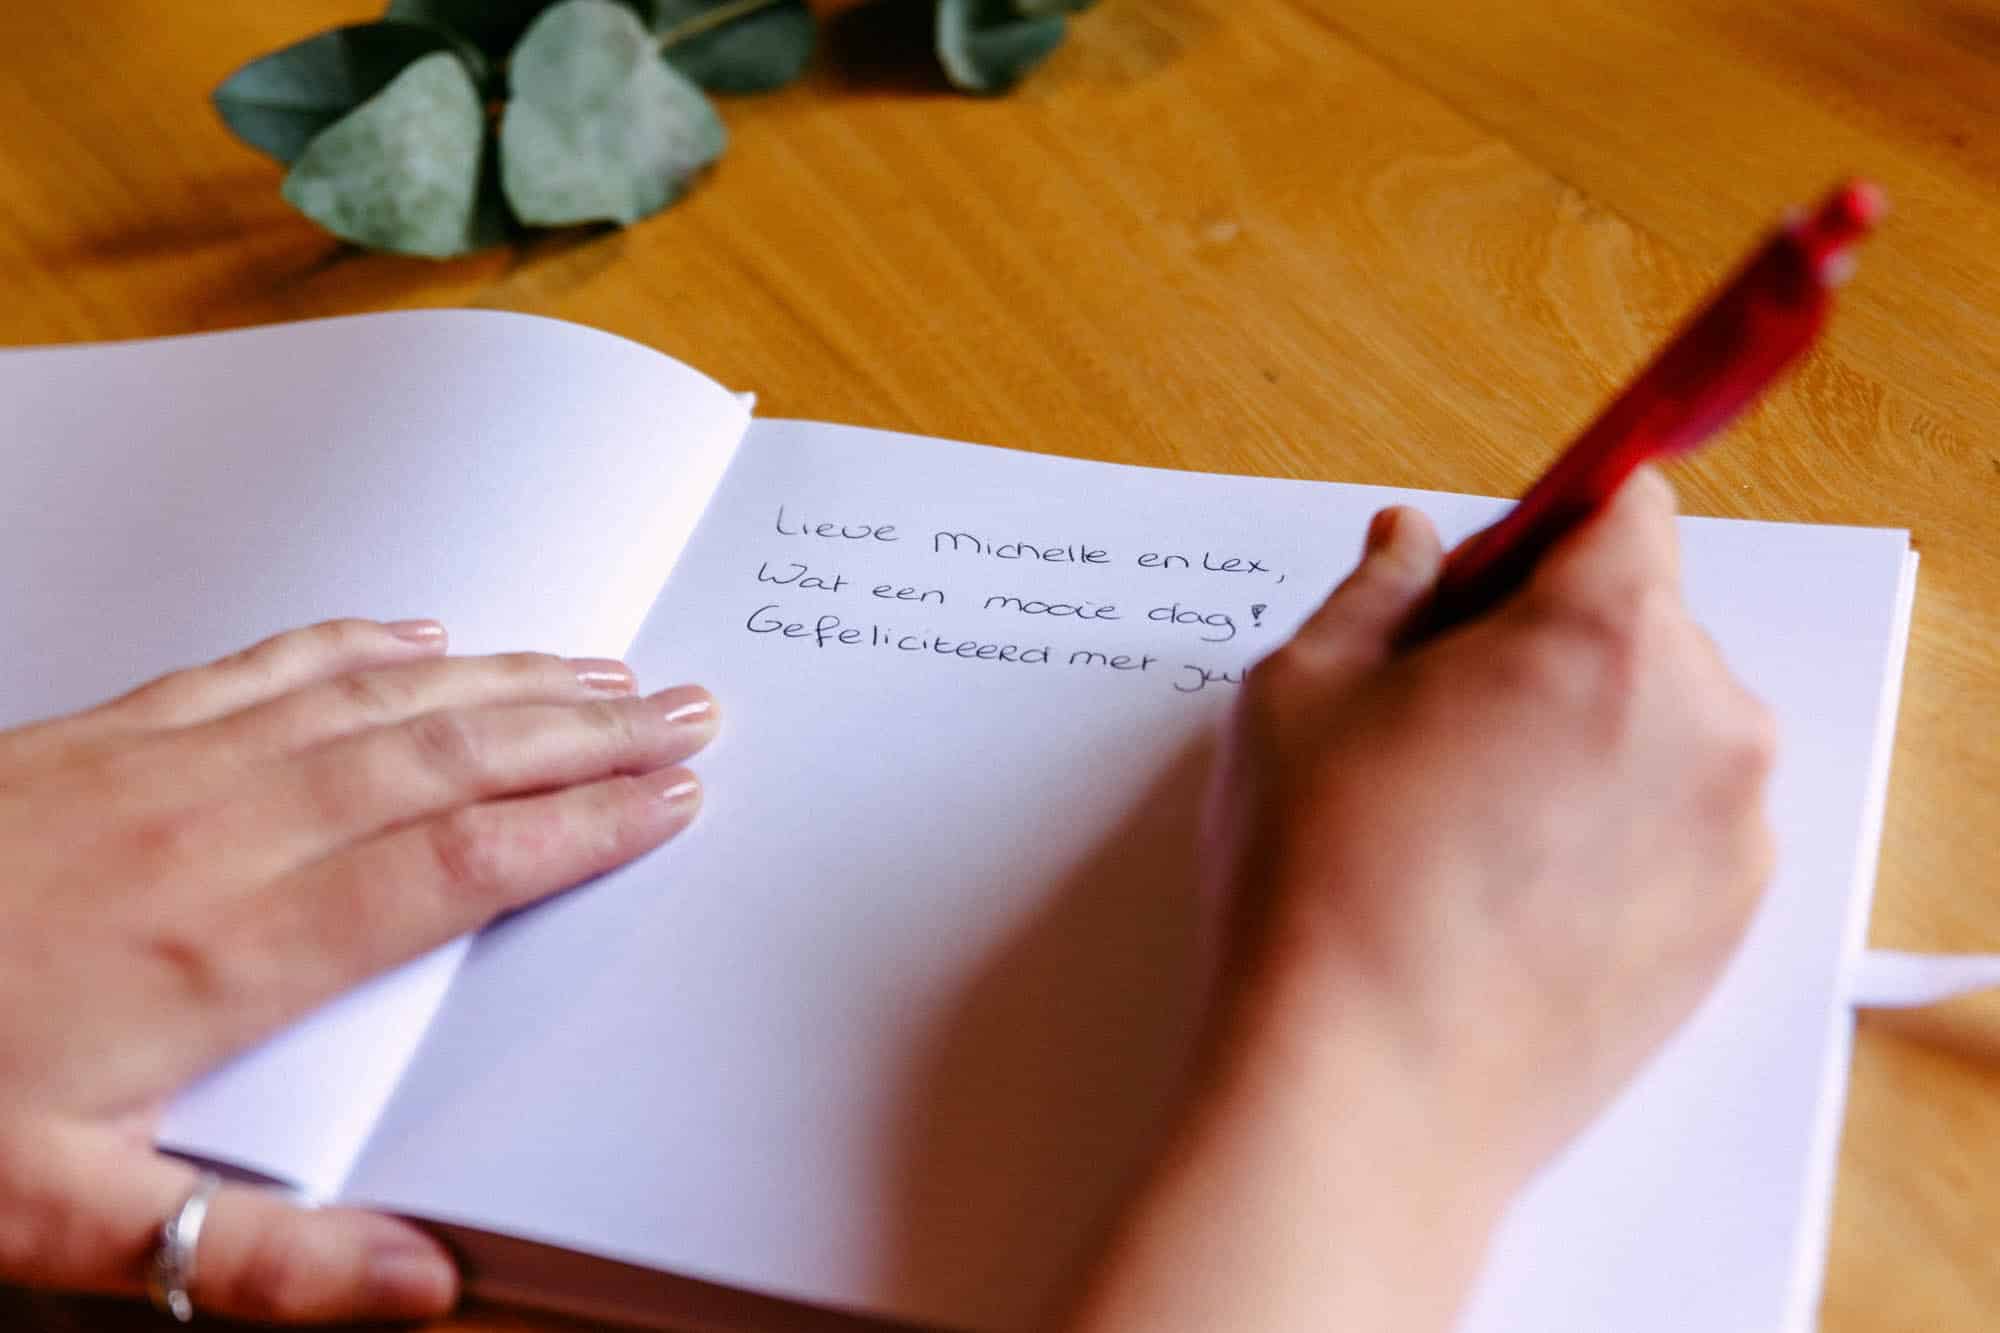 Een persoon die felicitaties voor een bruiloft opschrijft in een notitieboekje, met behulp van een rode pen.